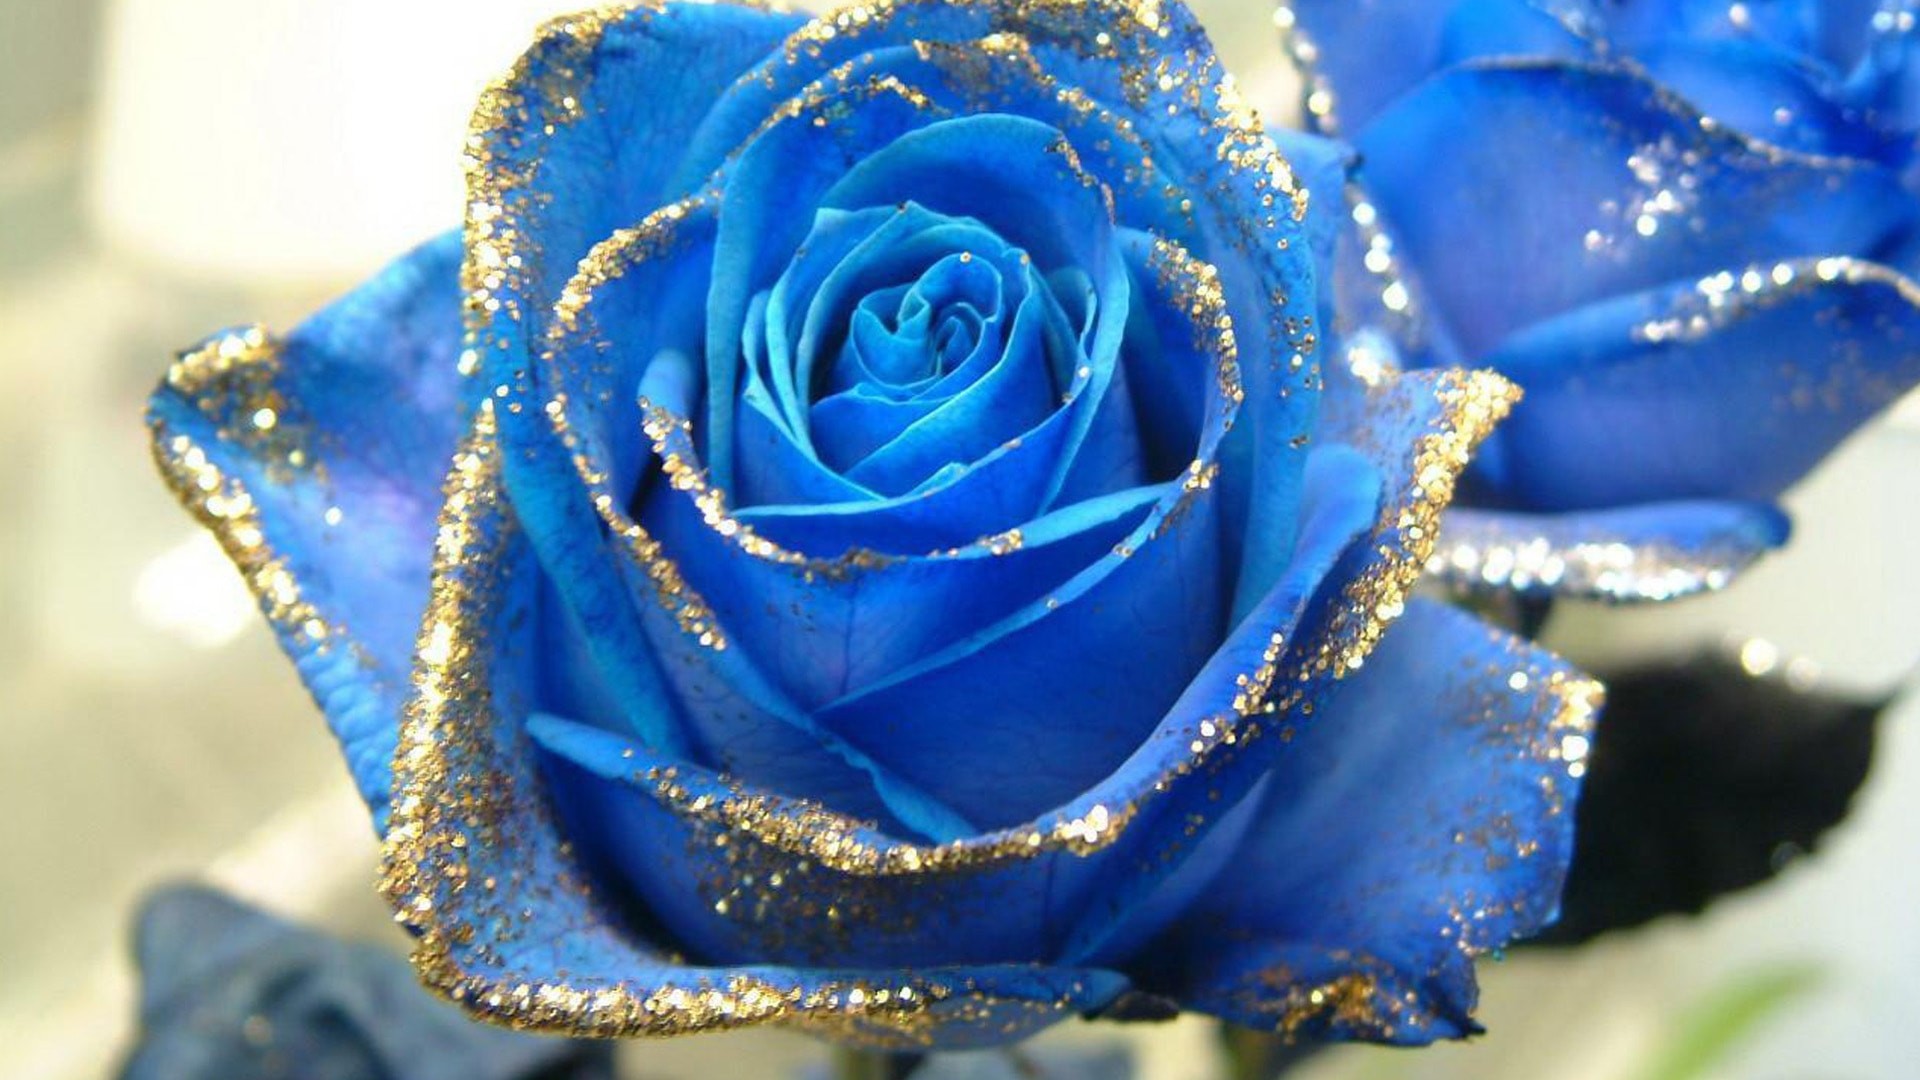 rose wallpaper,flower,rose,blue,garden roses,blue rose